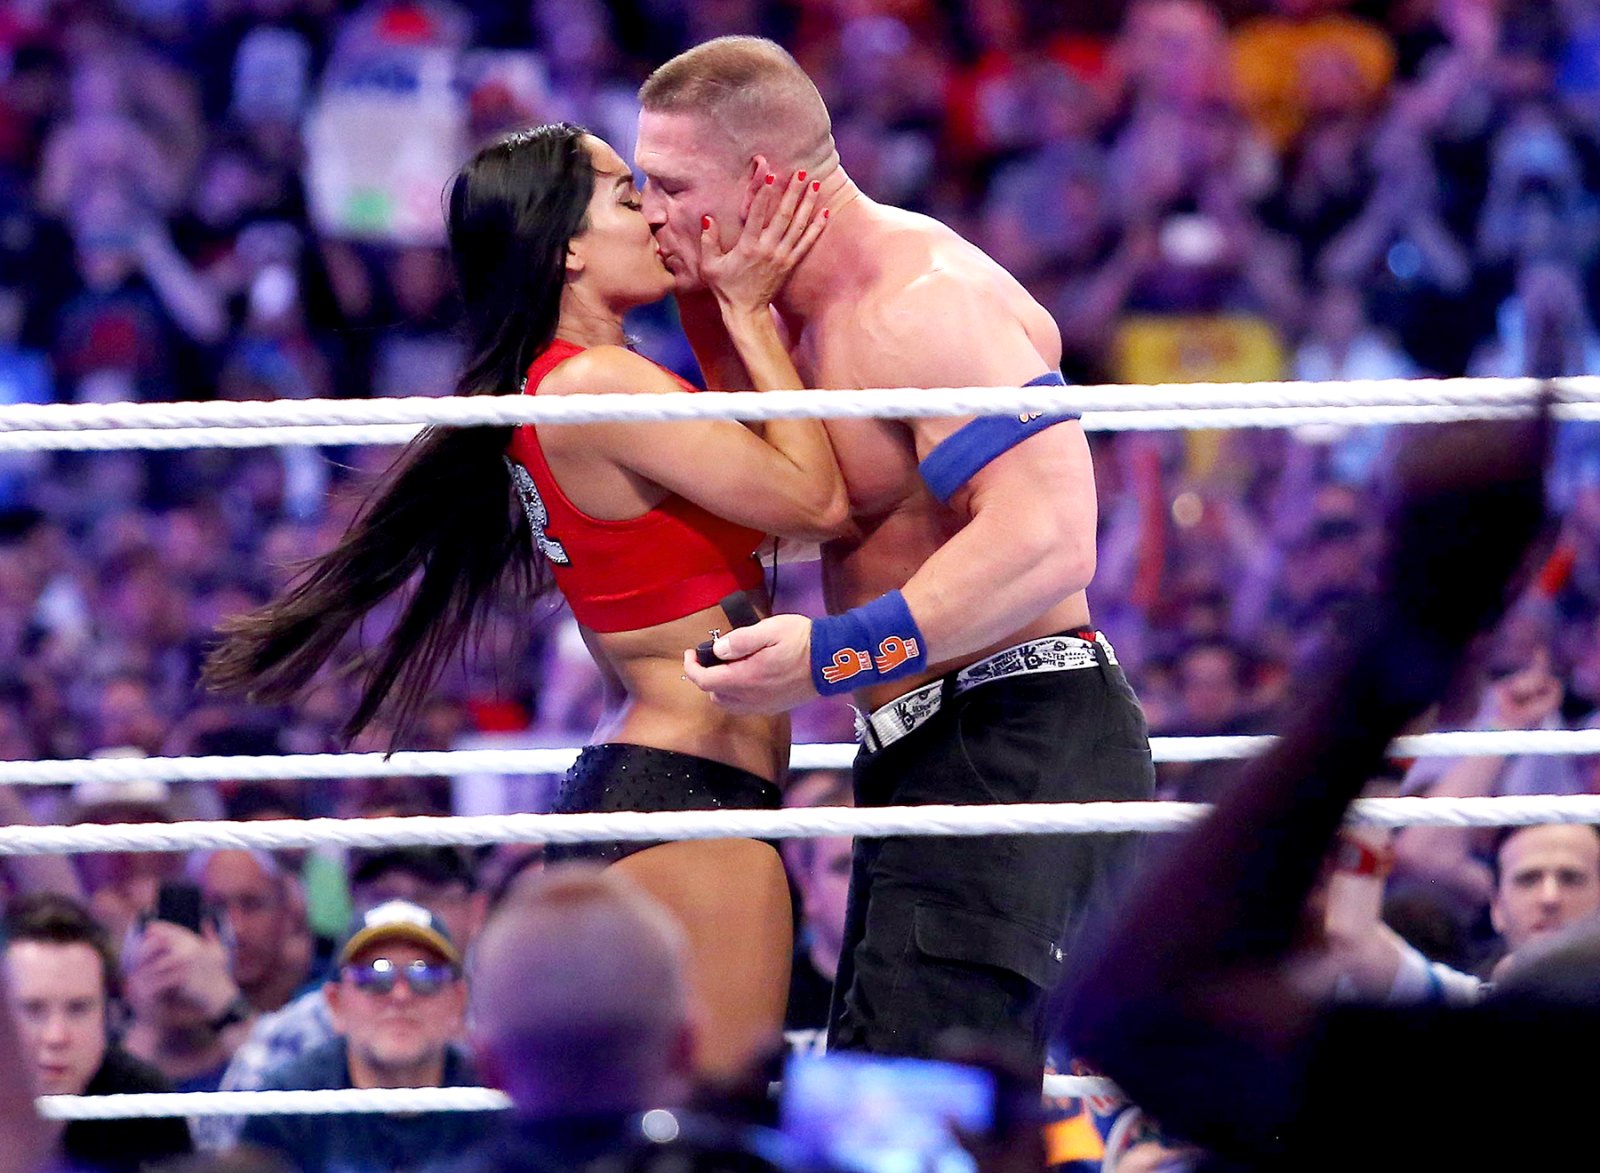 John Cena proposes to Nikki Bella